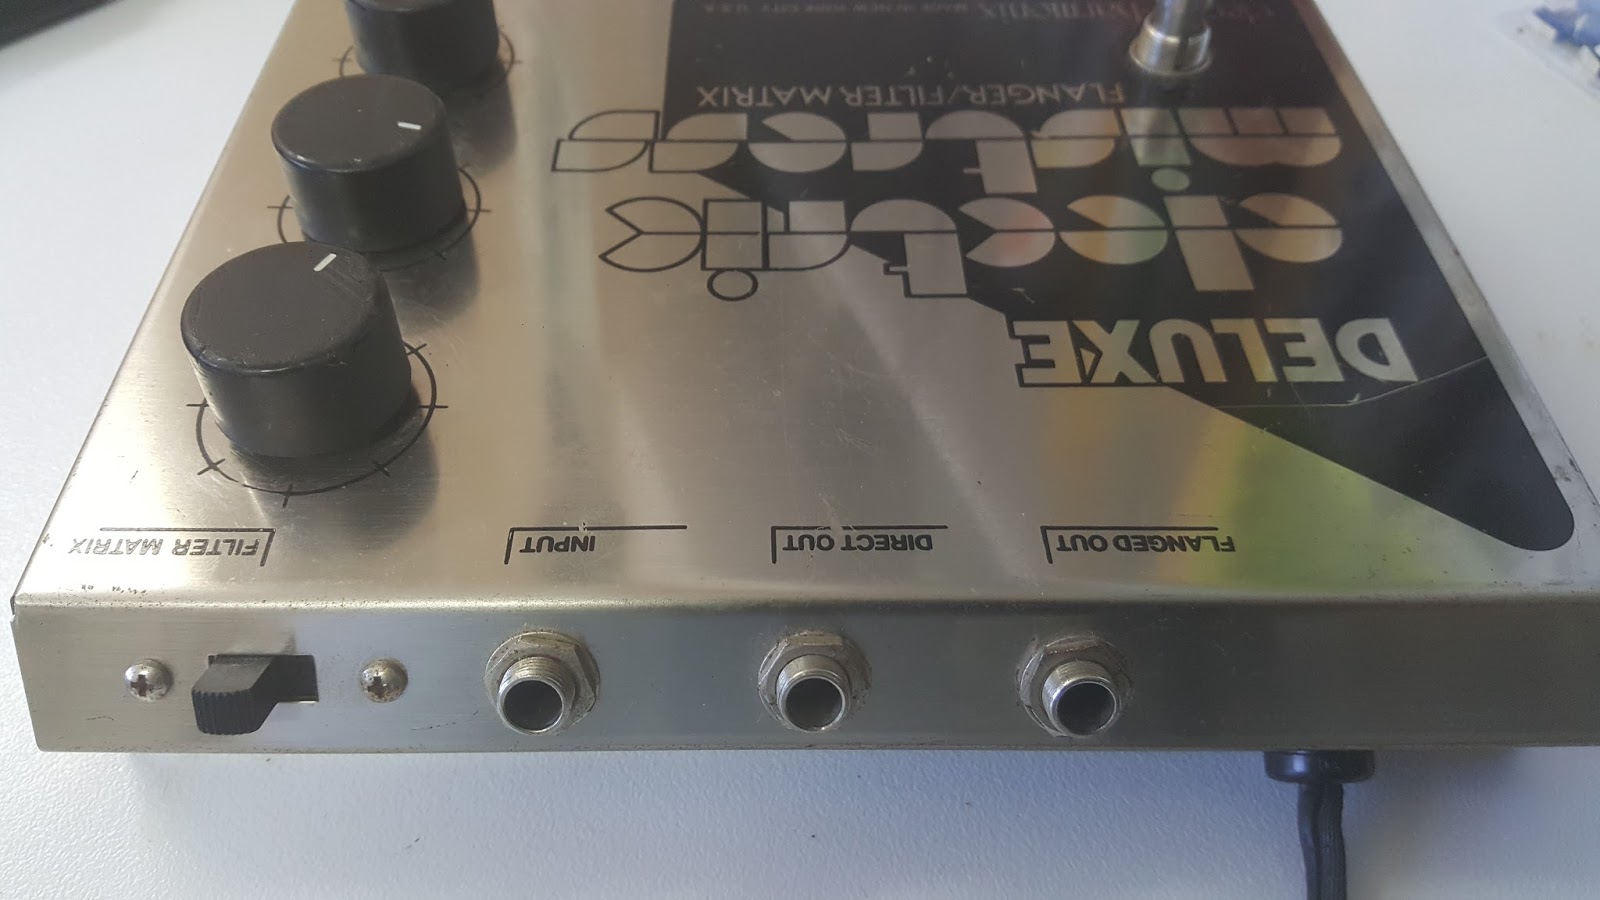 JonDent - Exploring Electronic Music: Electro harmonix Deluxe